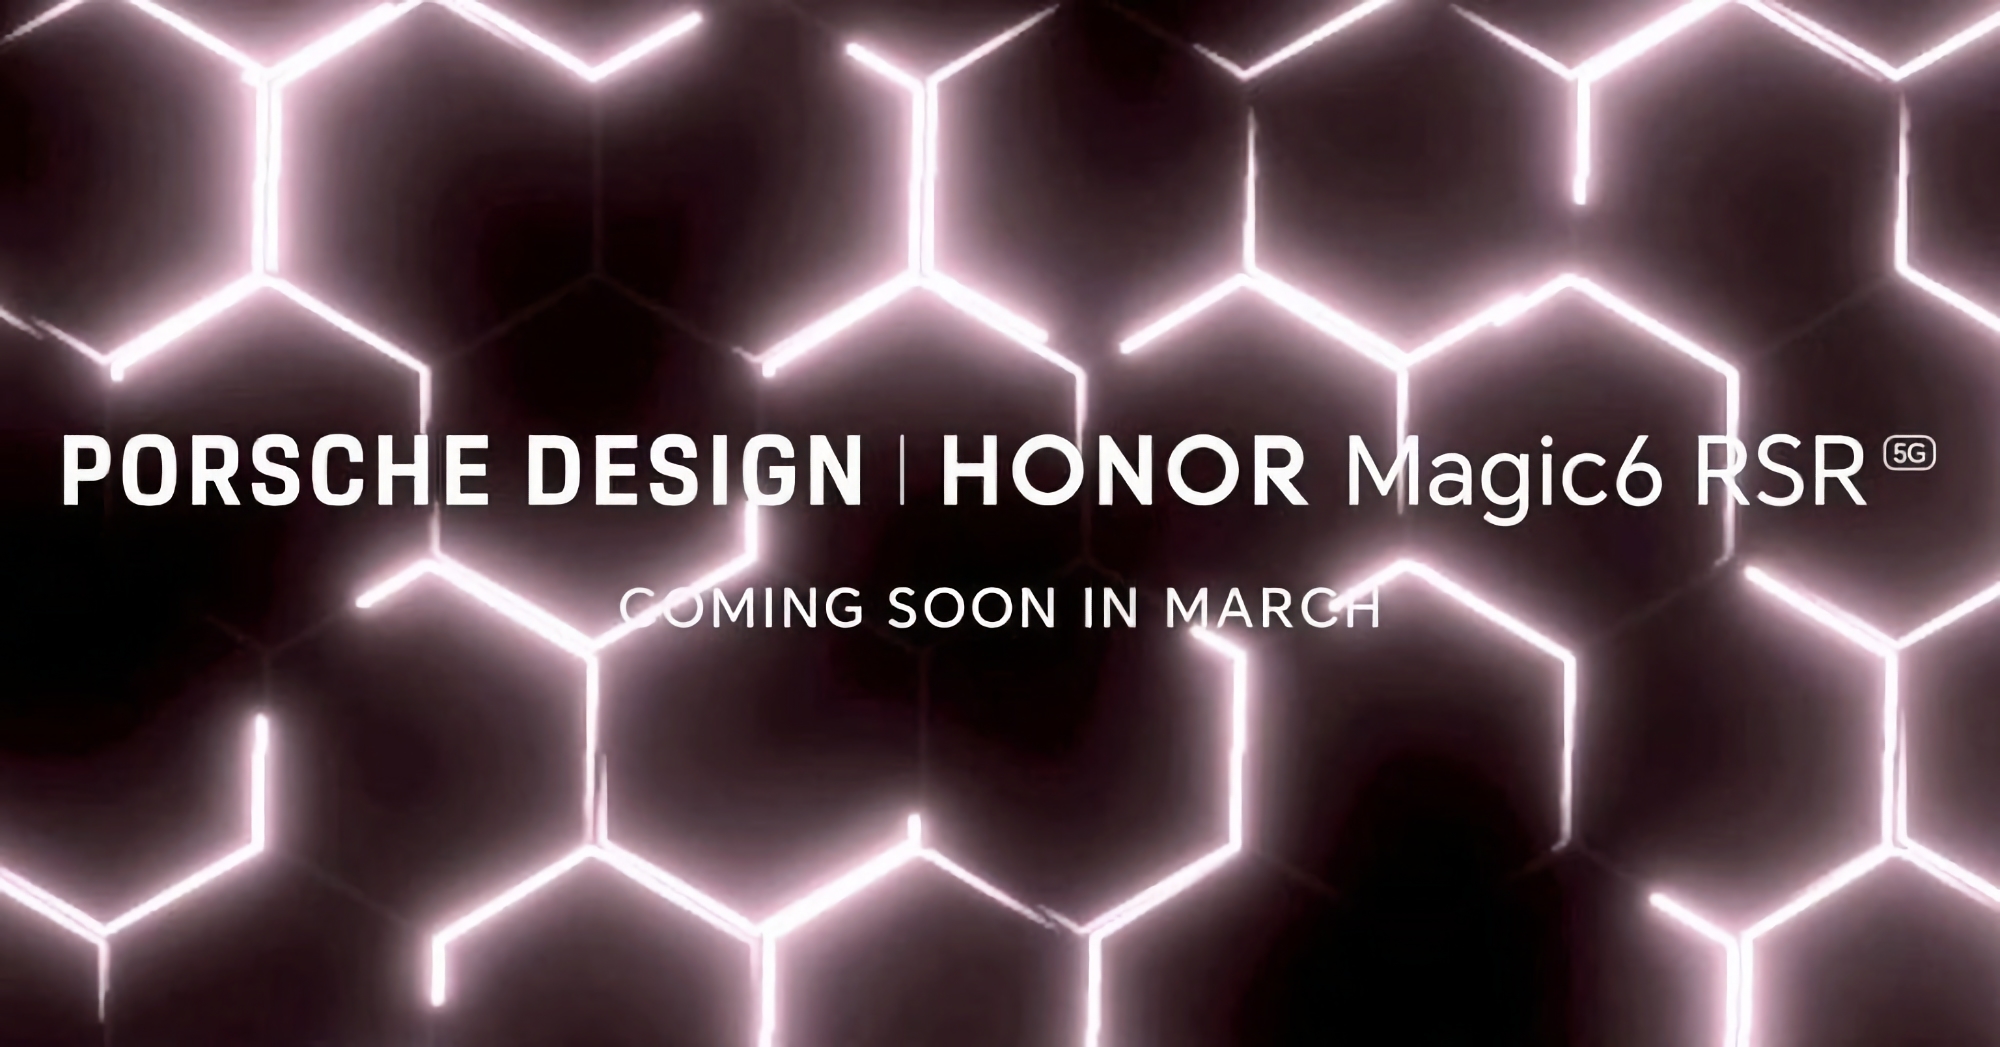 Honor will unveil Magic 6 RSR Porsche Design in March